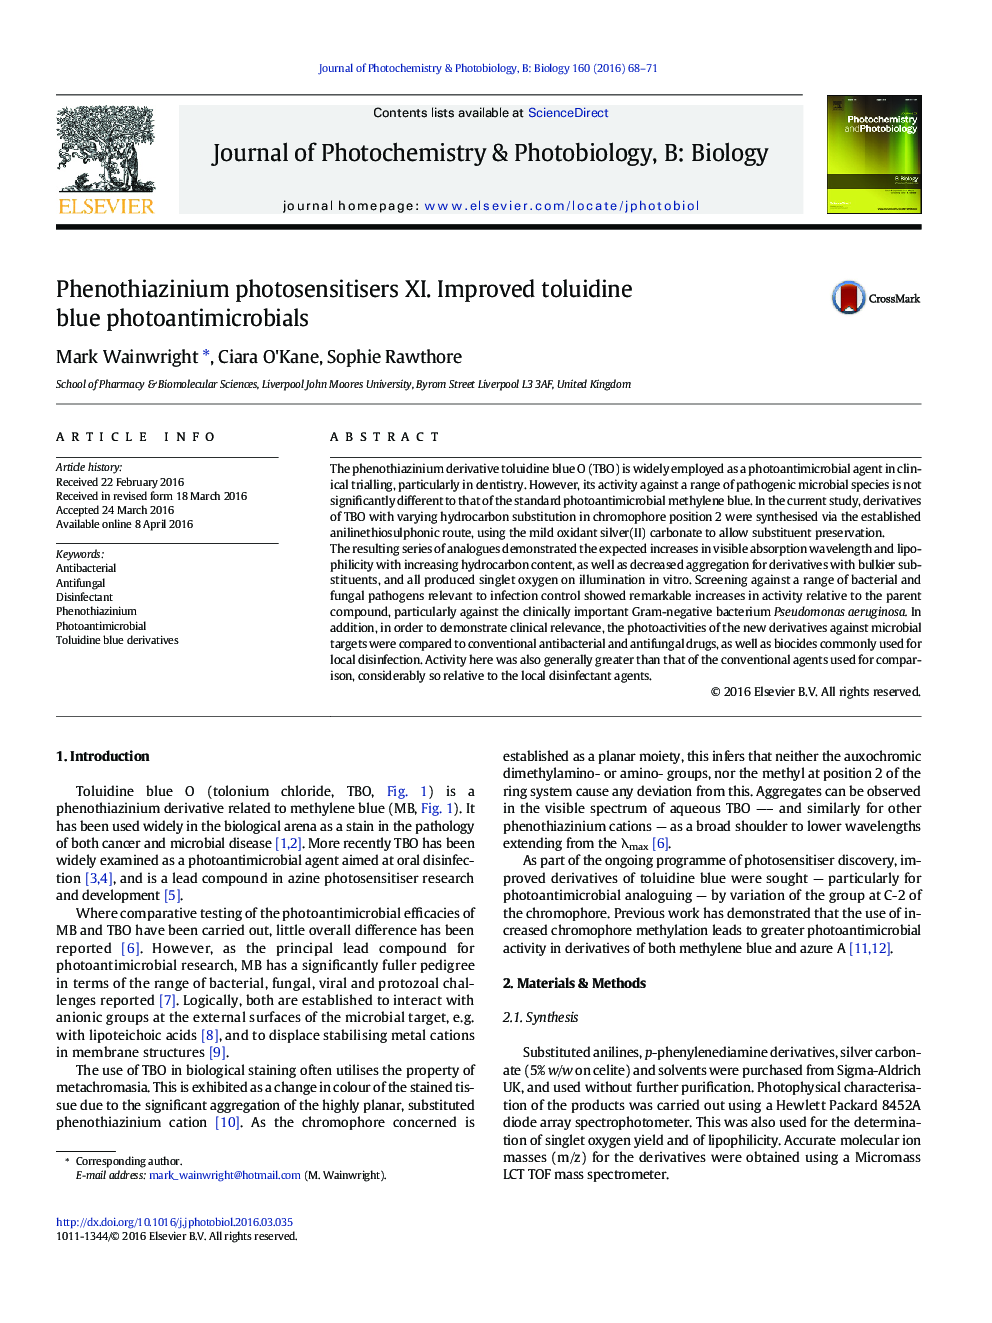 خواص ضدمیکروبی تصویری toluidine آبی بهبودیافته Phenothiazinium photosensitisers XI 